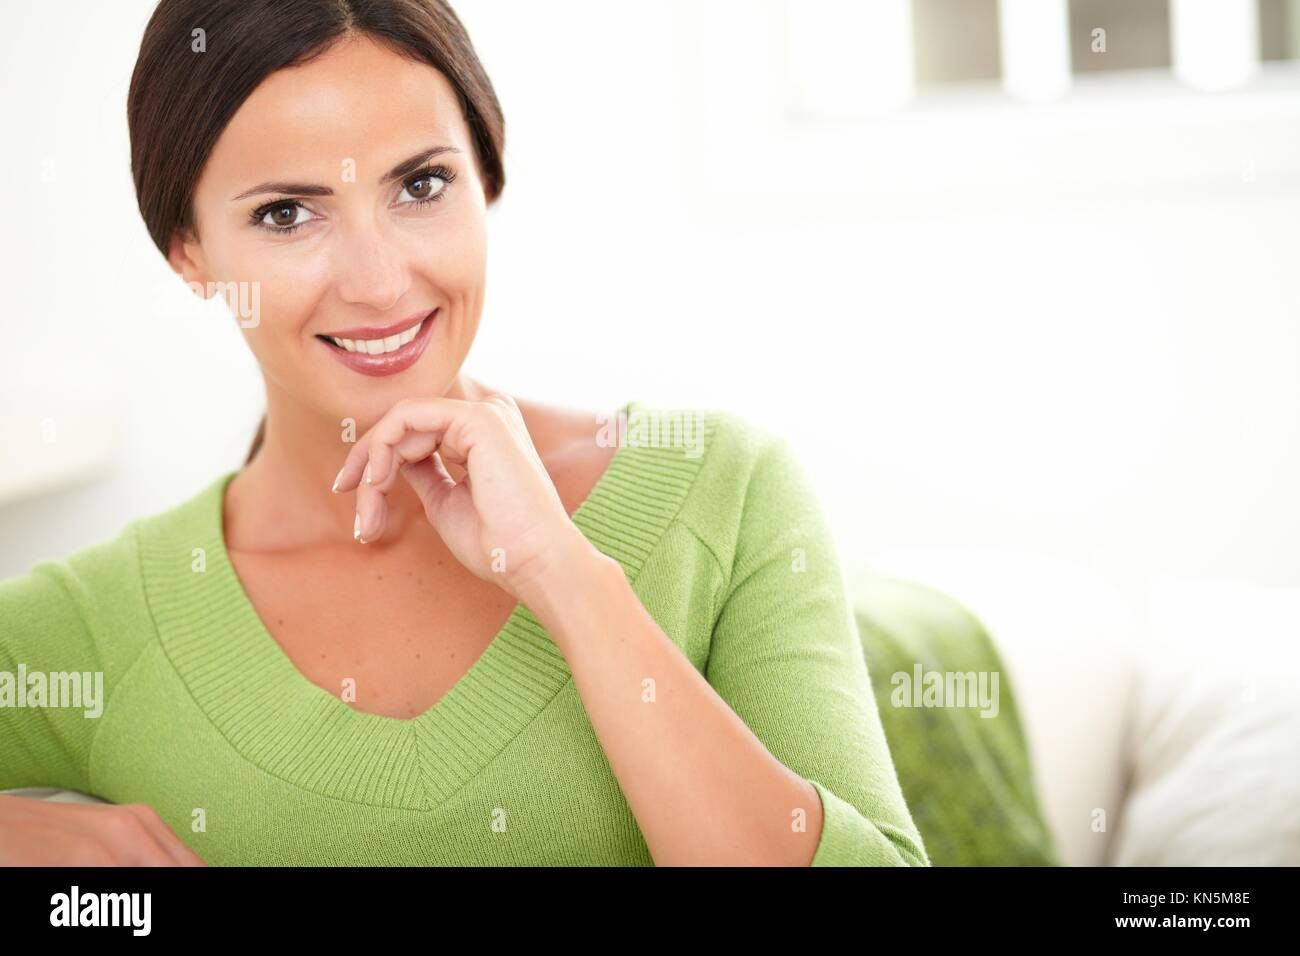 Sonriente mujer caucásica en camisa verde mirando a la cámara mientras se pone la mano en la barbilla en interiores - copia el espacio. Foto de stock